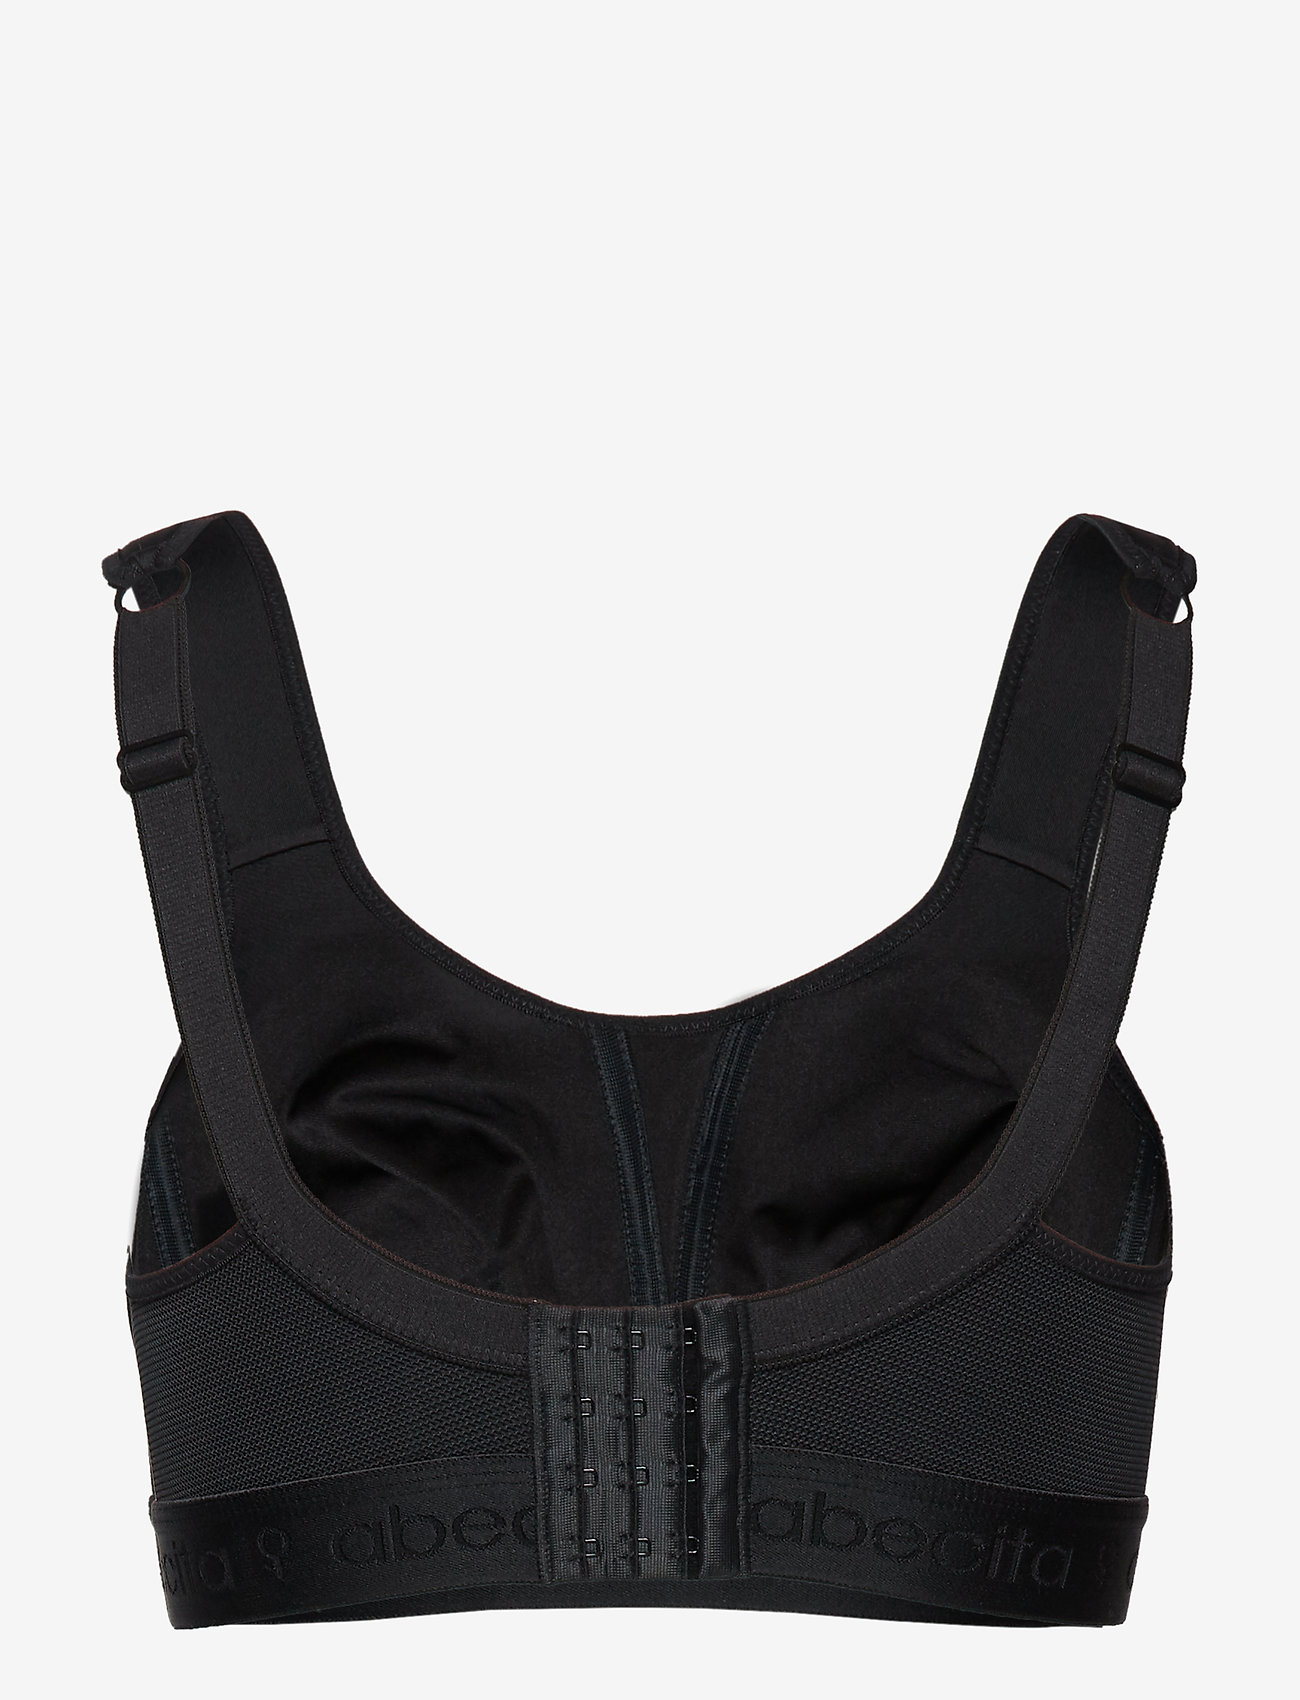 Abecita - Kimberly,Sport bra - sport bras: high support - black - 1